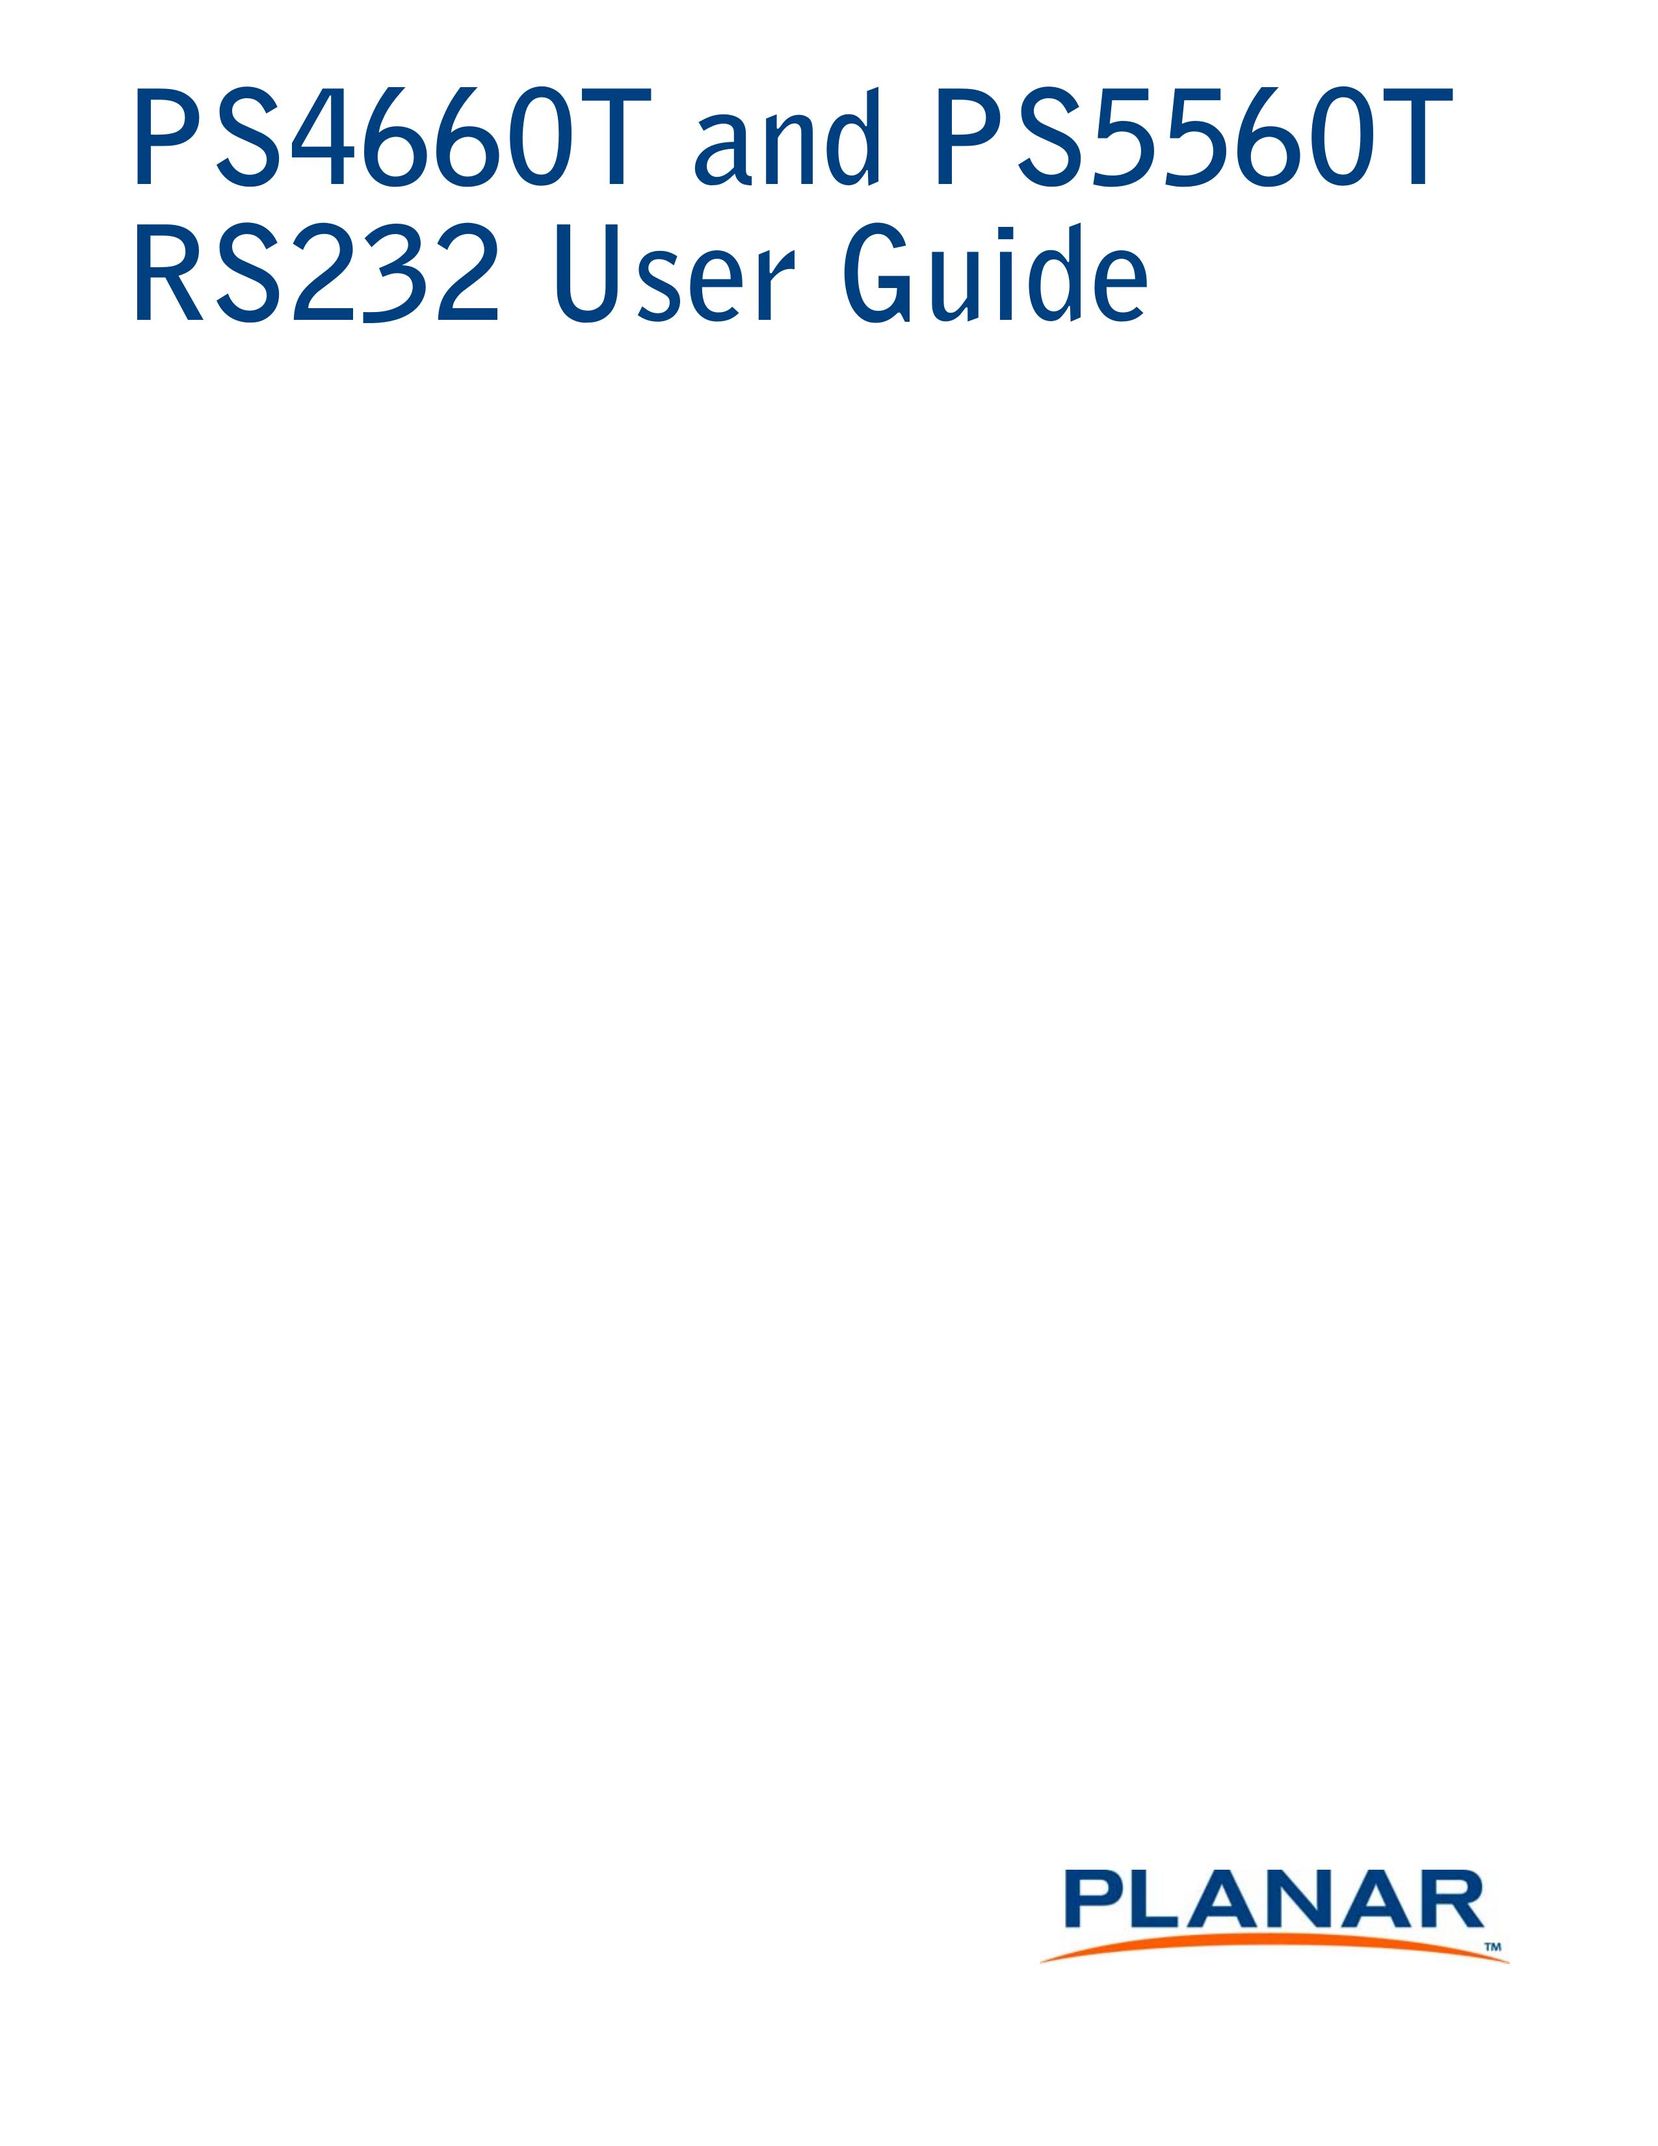 Planar PS4660T Garage Door Opener User Manual